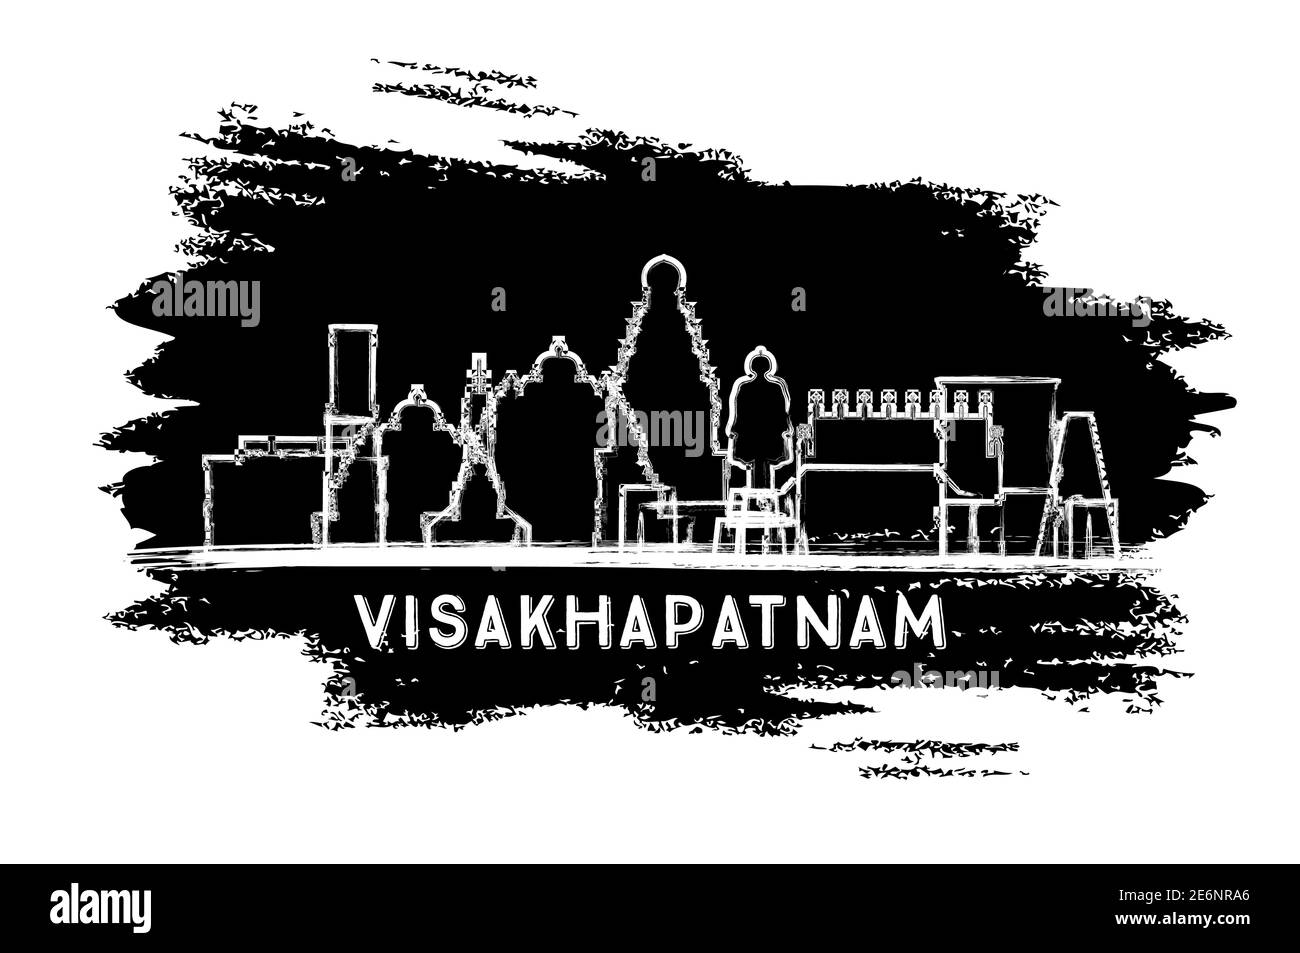 Visakhapatnam India City Skyline Silhouette. Schizzo disegnato a mano. Concetto di viaggio d'affari e turismo con architettura storica. Illustrazione vettoriale. Illustrazione Vettoriale